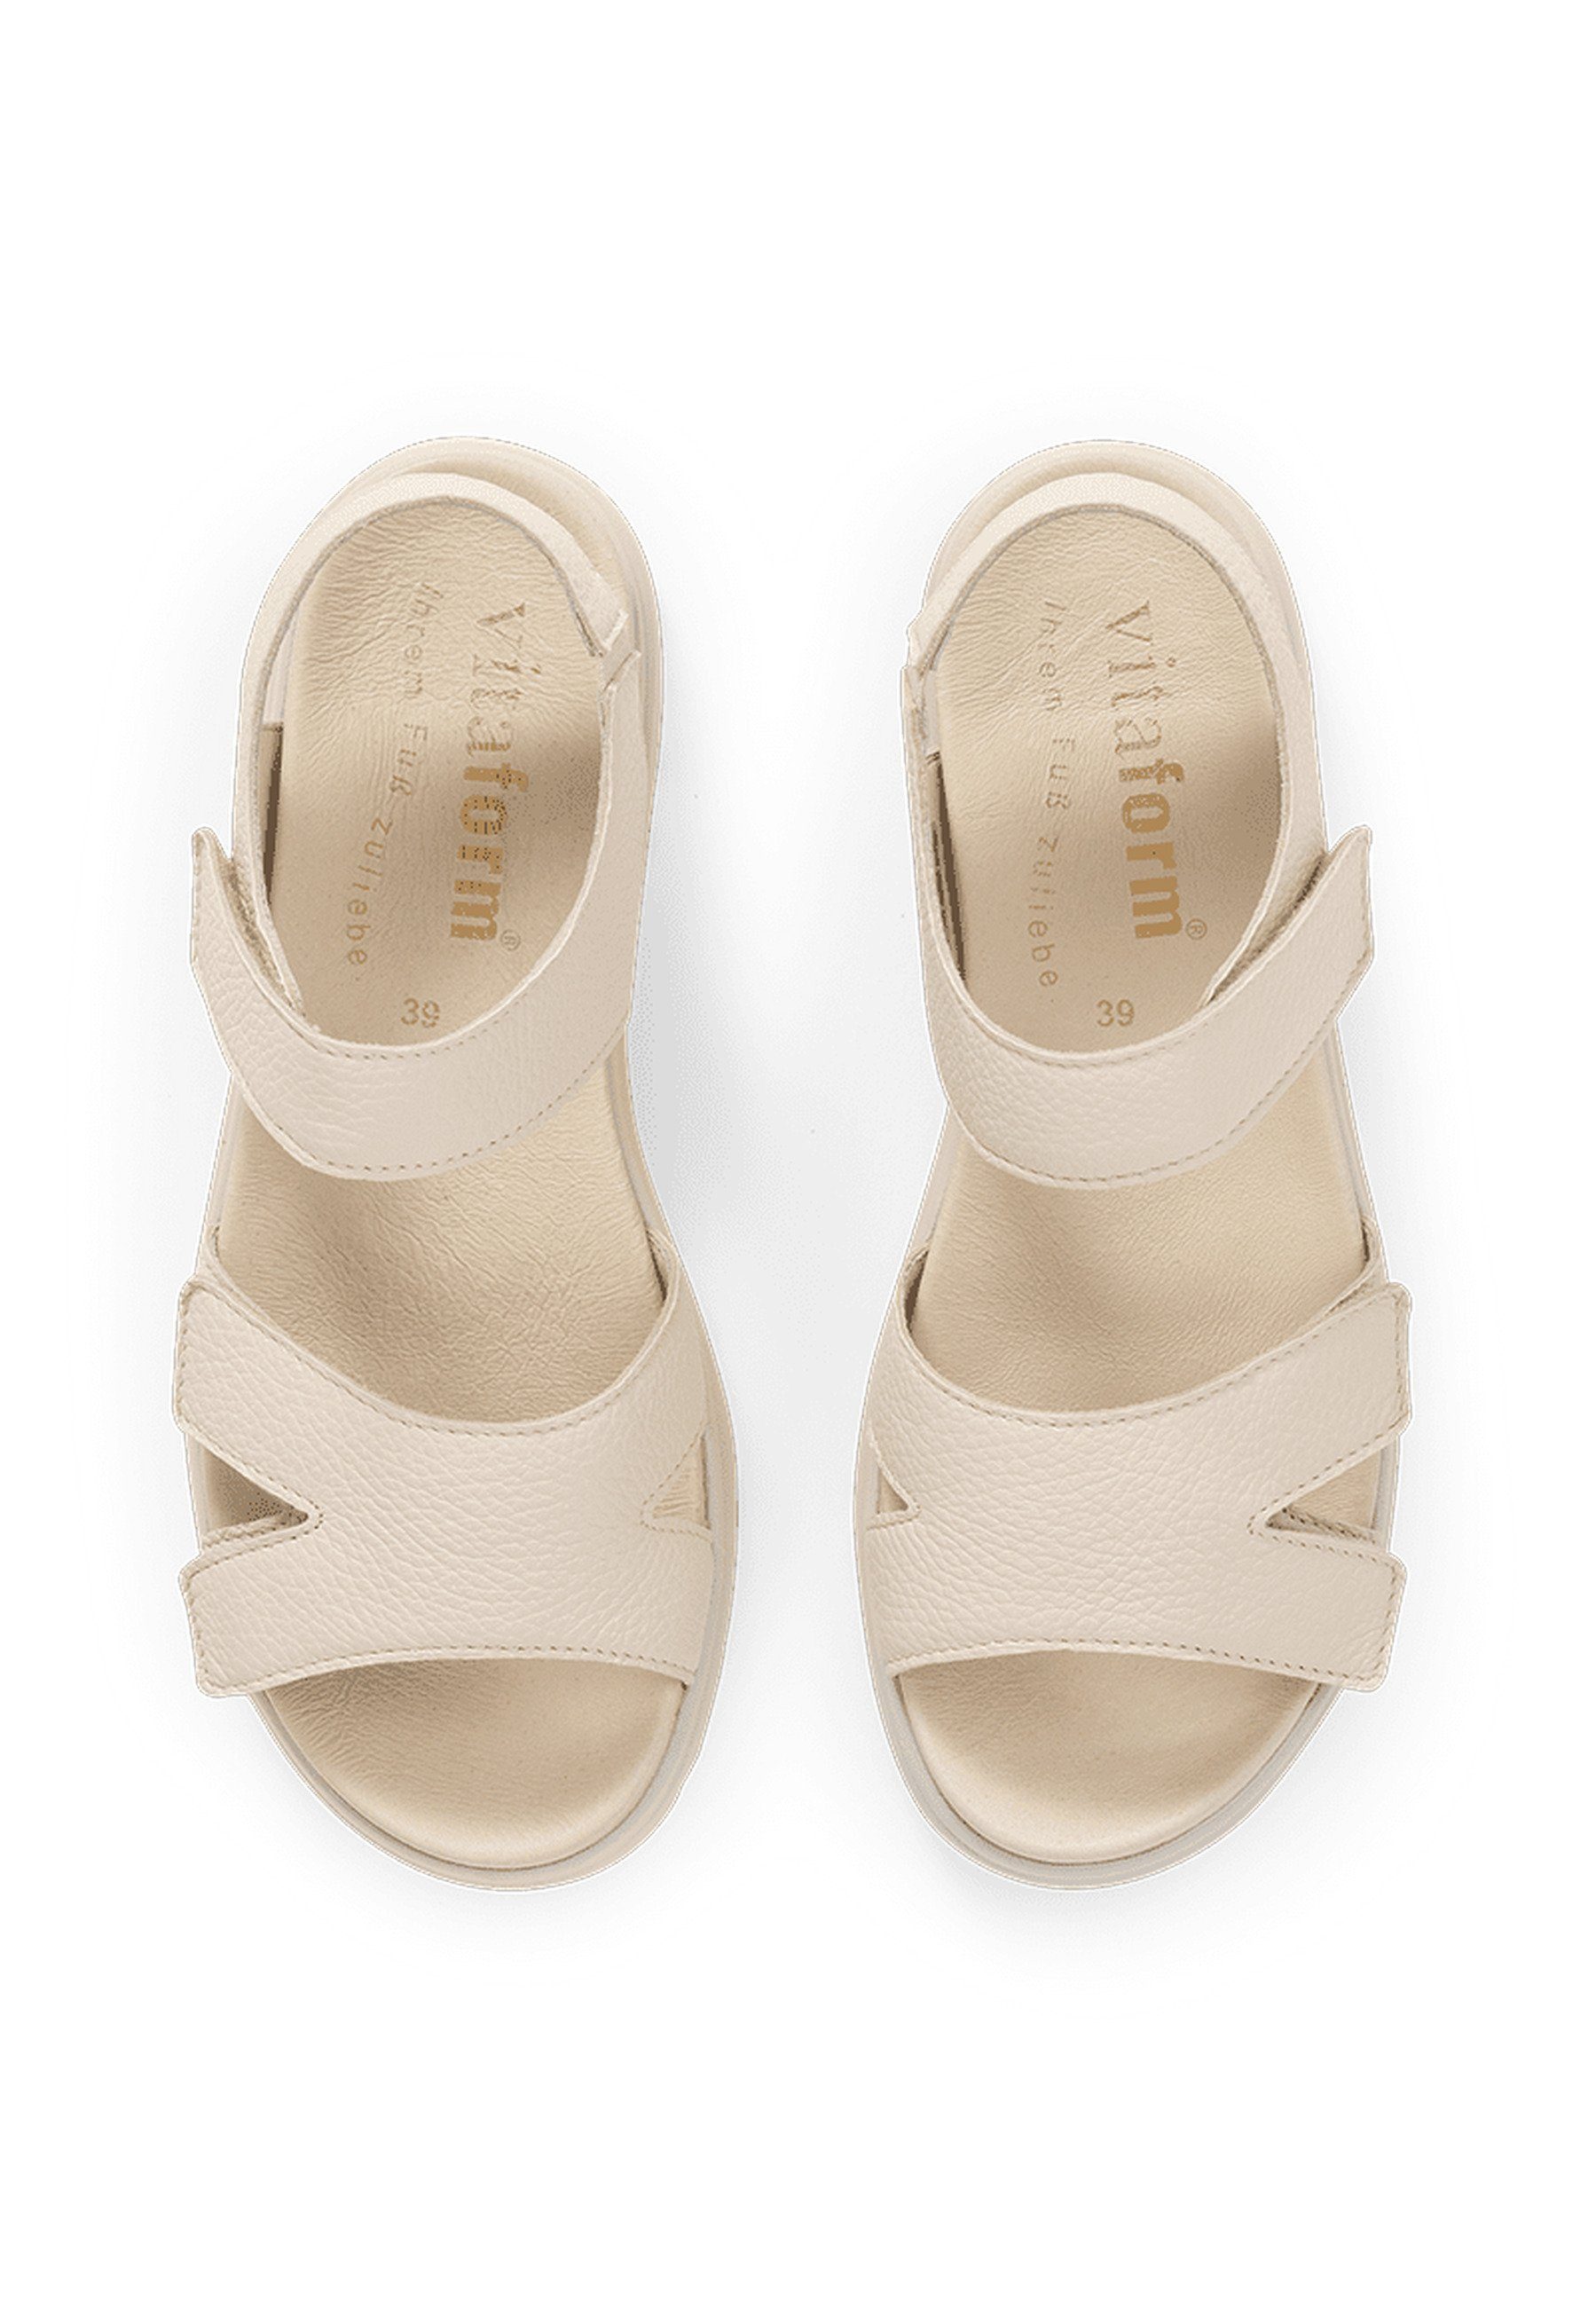 Sandale beige vitaform Damenschuhe Hirschleder Sandale